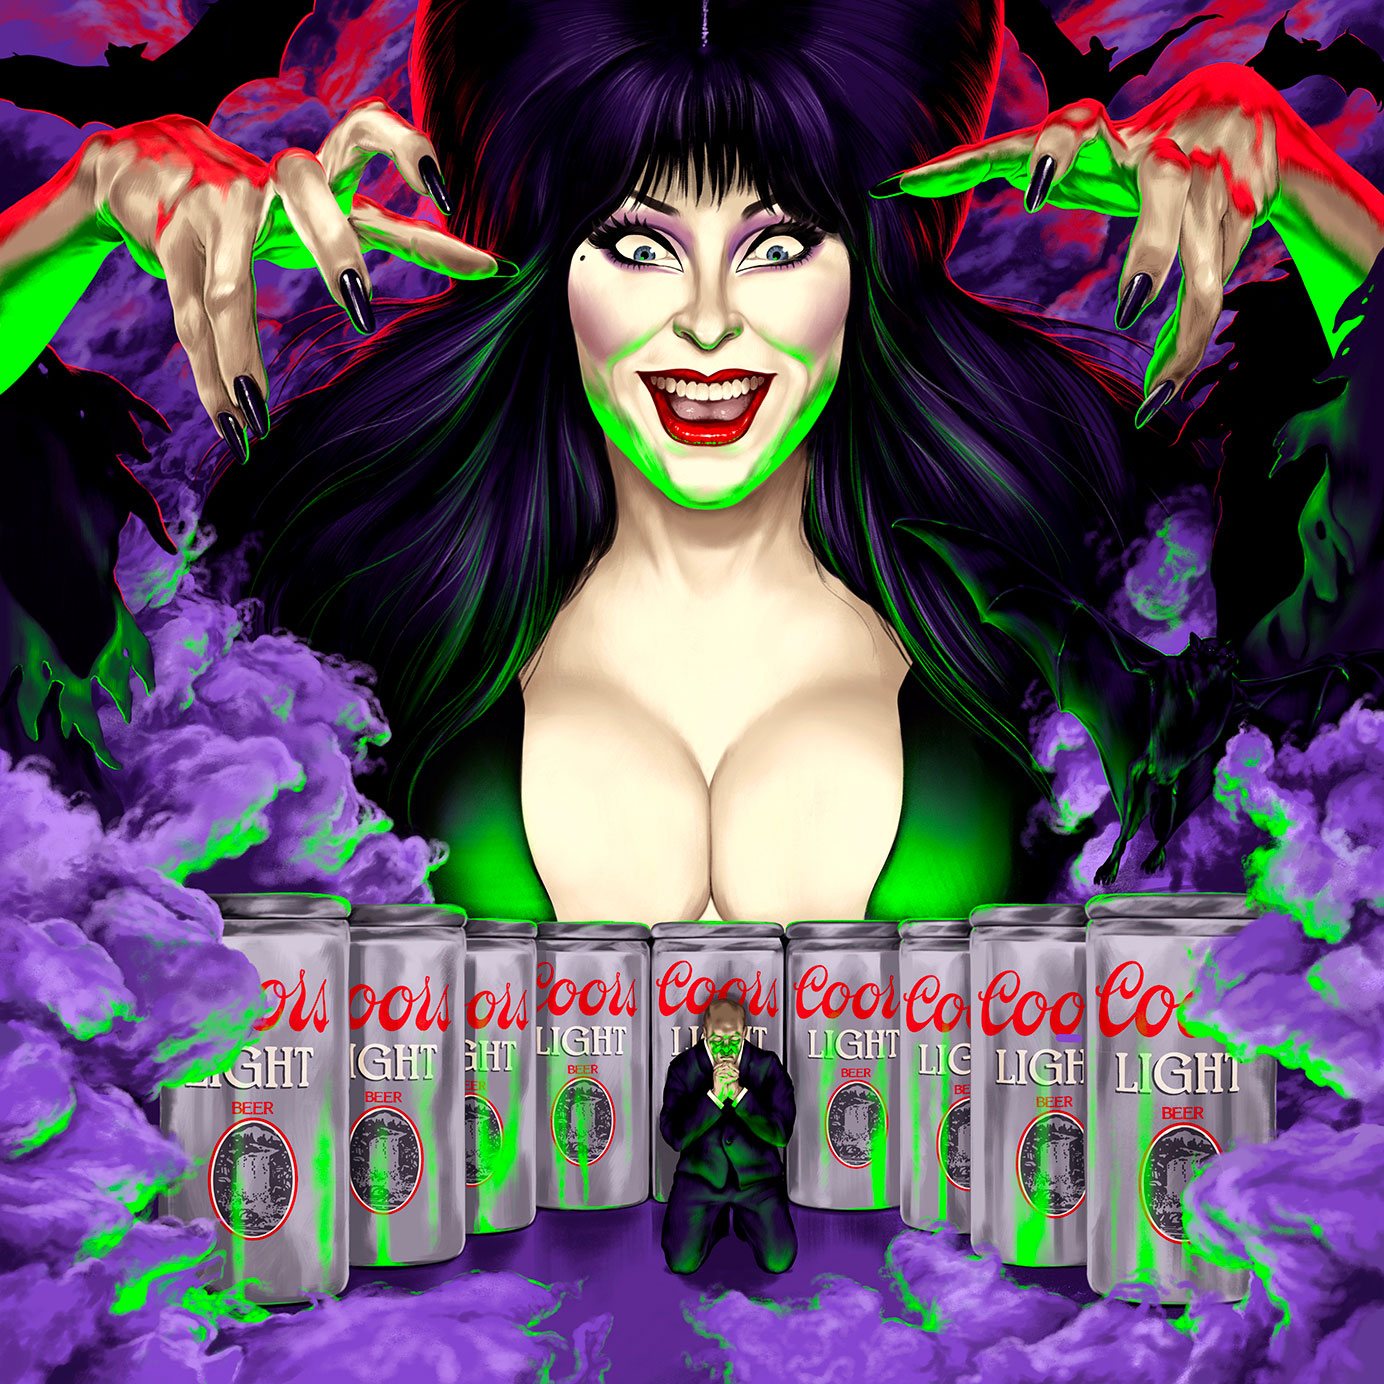 Elvira's Short, Sexy Stint as Coors Light's Halloween Queen